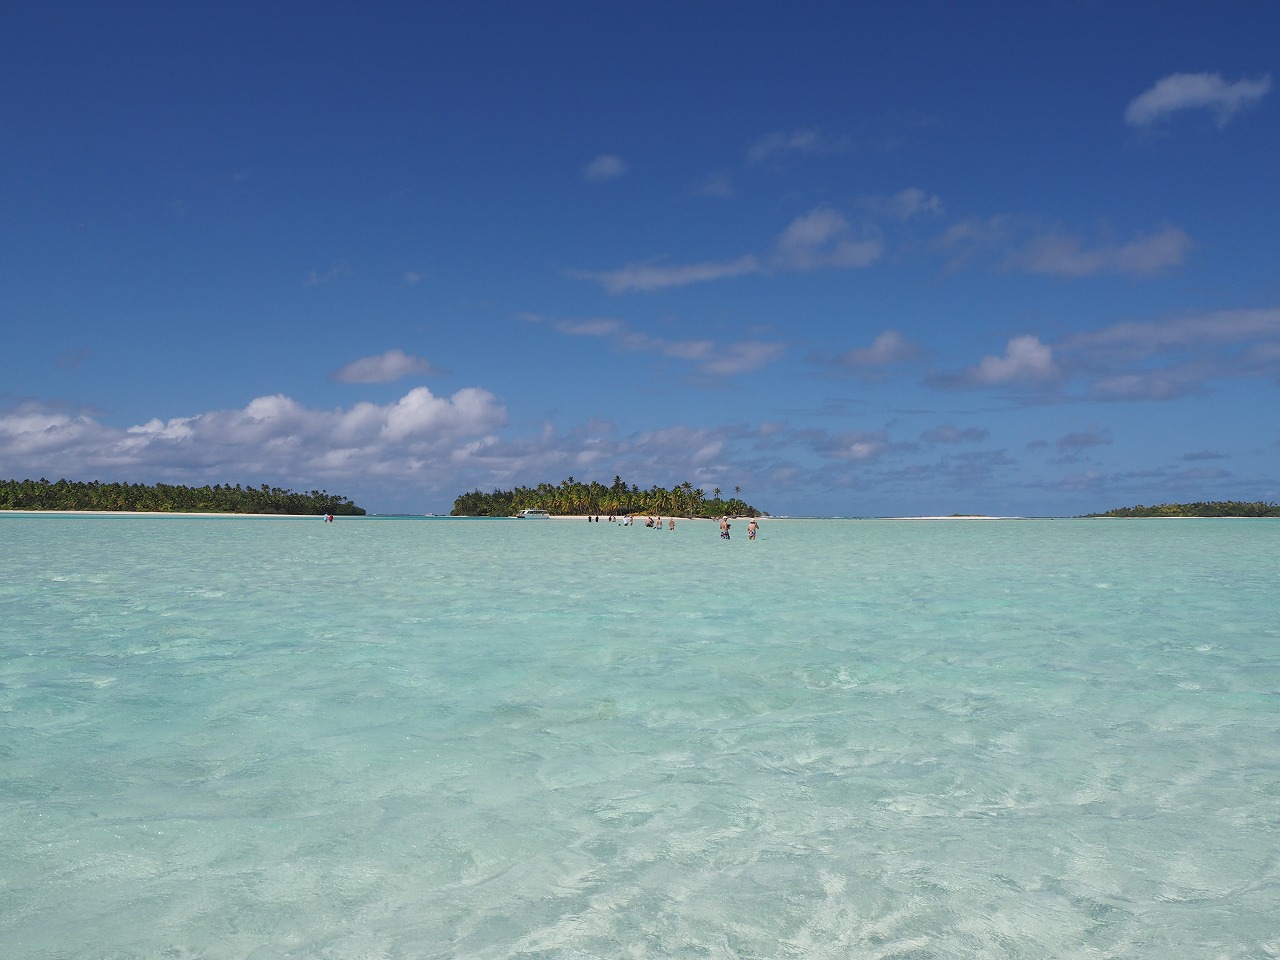 Valokuva Aitutaki Sandbankista. sijaitsee luonnonalueella